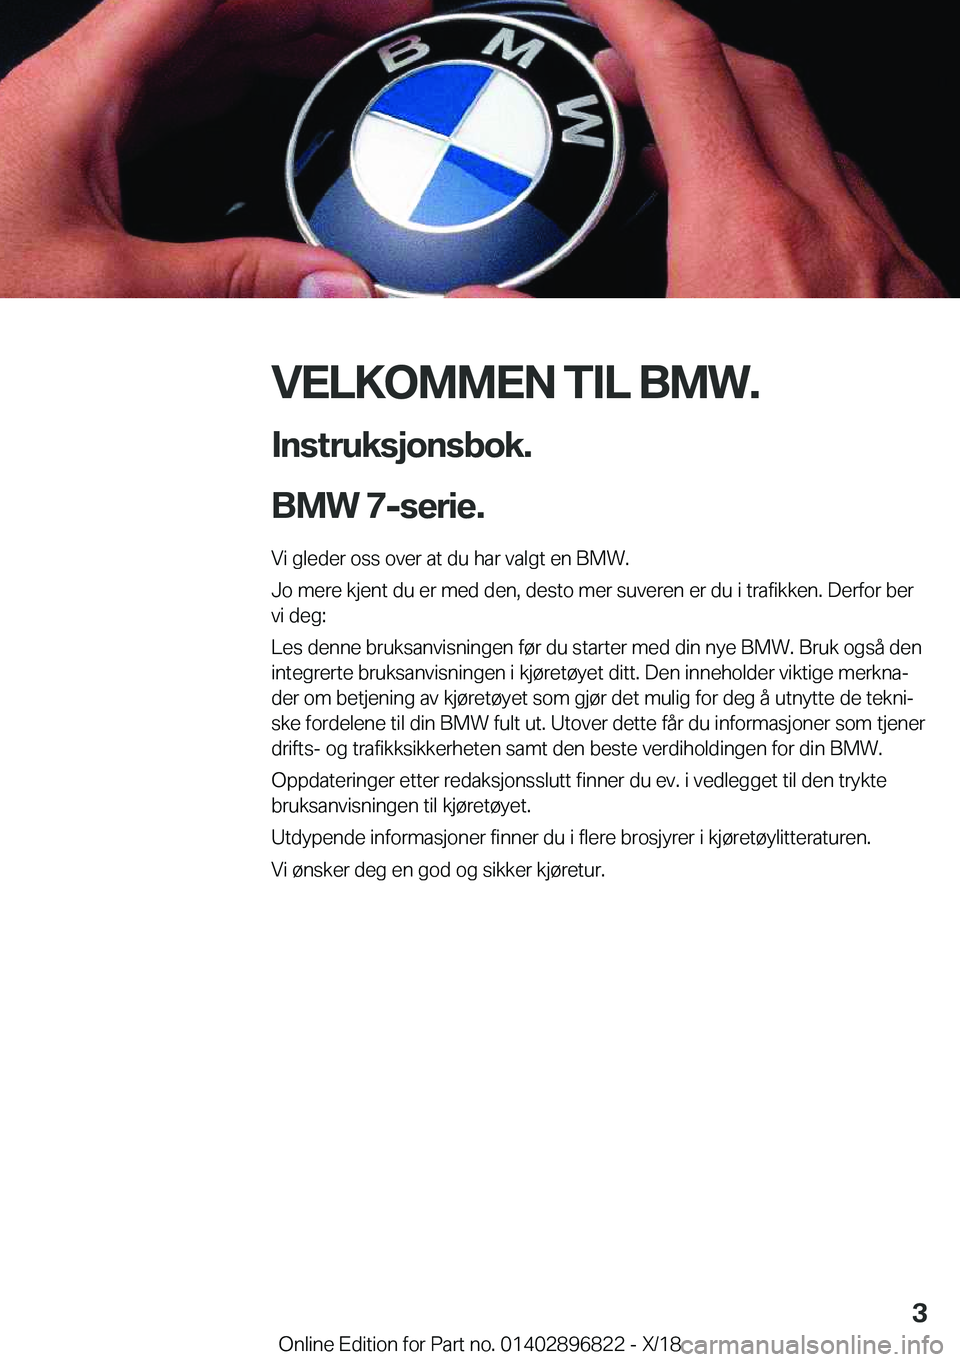 BMW 7 SERIES 2019  InstruksjonsbØker (in Norwegian) �V�E�L�K�O�M�M�E�N��T�I�L��B�M�W�.�I�n�s�t�r�u�k�s�j�o�n�s�b�o�k�.
�B�M�W��7�-�s�e�r�i�e�.
�V�i��g�l�e�d�e�r��o�s�s��o�v�e�r��a�t��d�u��h�a�r��v�a�l�g�t��e�n��B�M�W�.
�J�o��m�e�r�e��k�j�